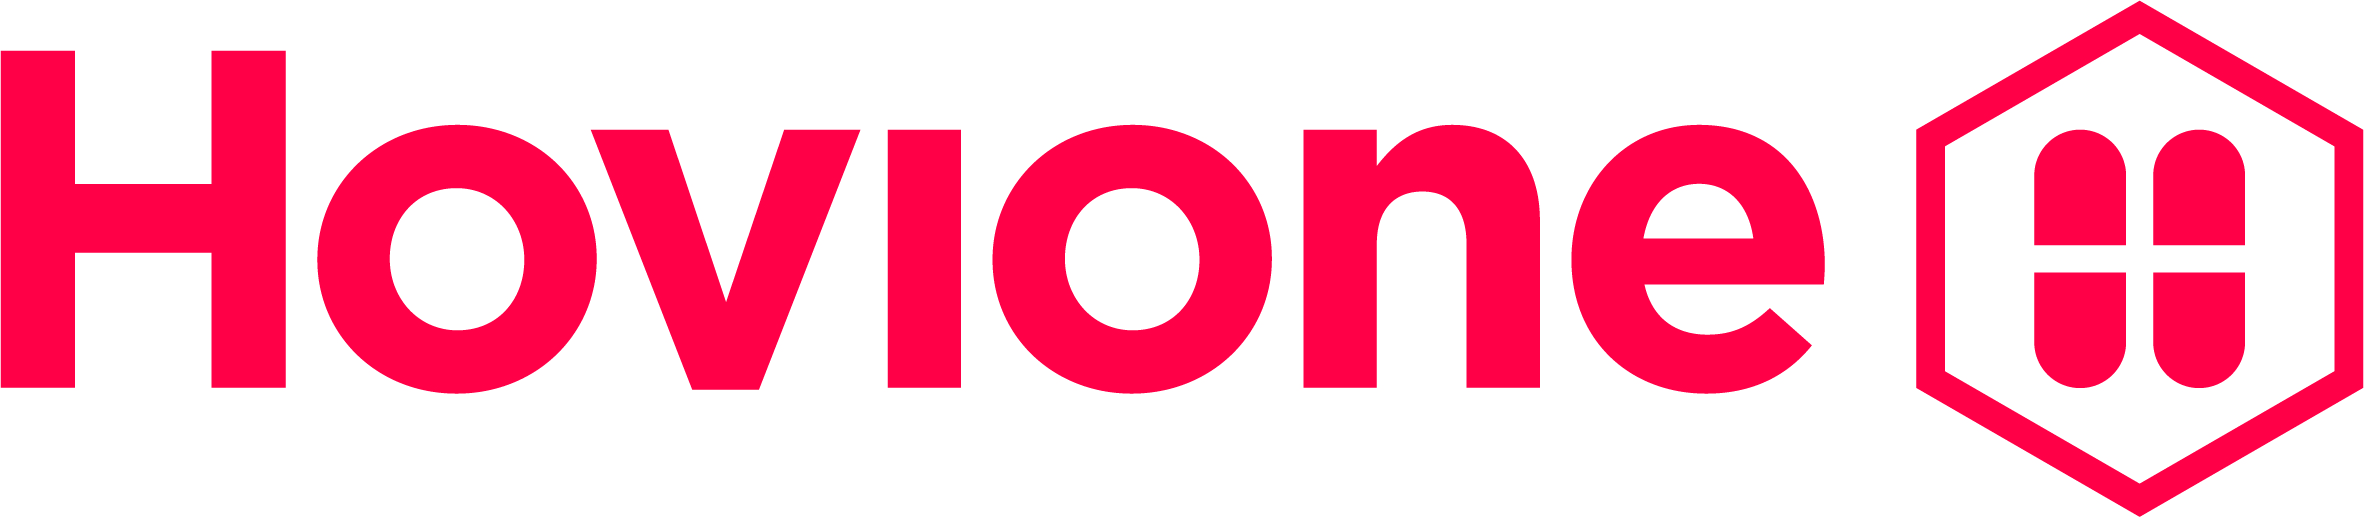 HOVIONE Company Profile